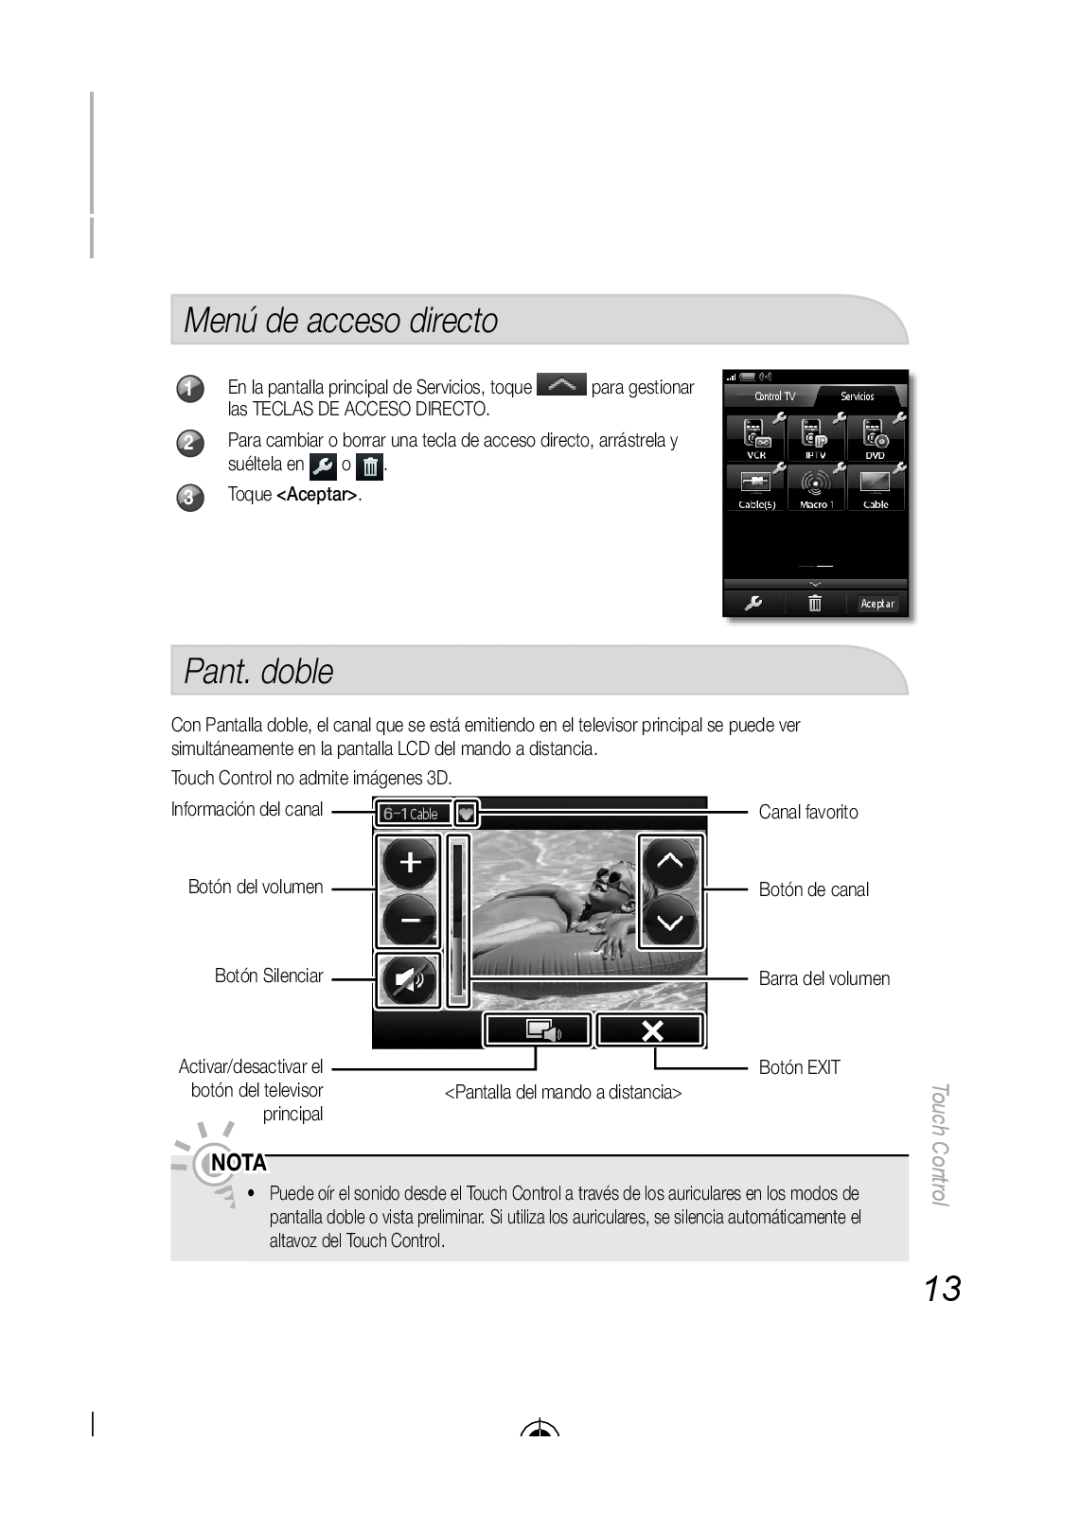 Samsung LED-C9000, BN68-03092A-02 user manual Menú de acceso directo, Pant. doble, Nota, Touch Control 